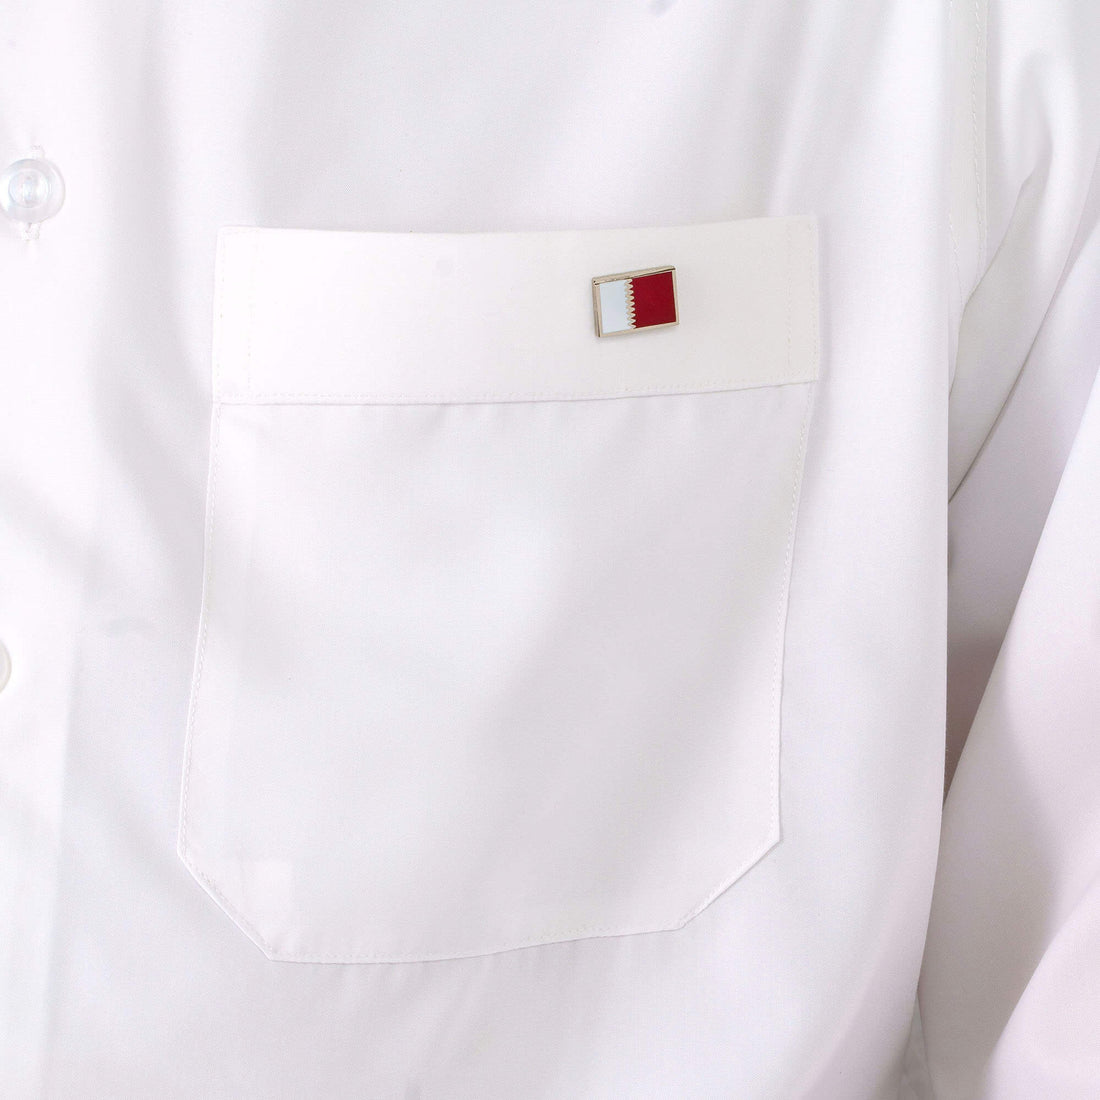 دبوس: علم قطر  ( متوفر كدبوس أو مغناطيس ملابس)